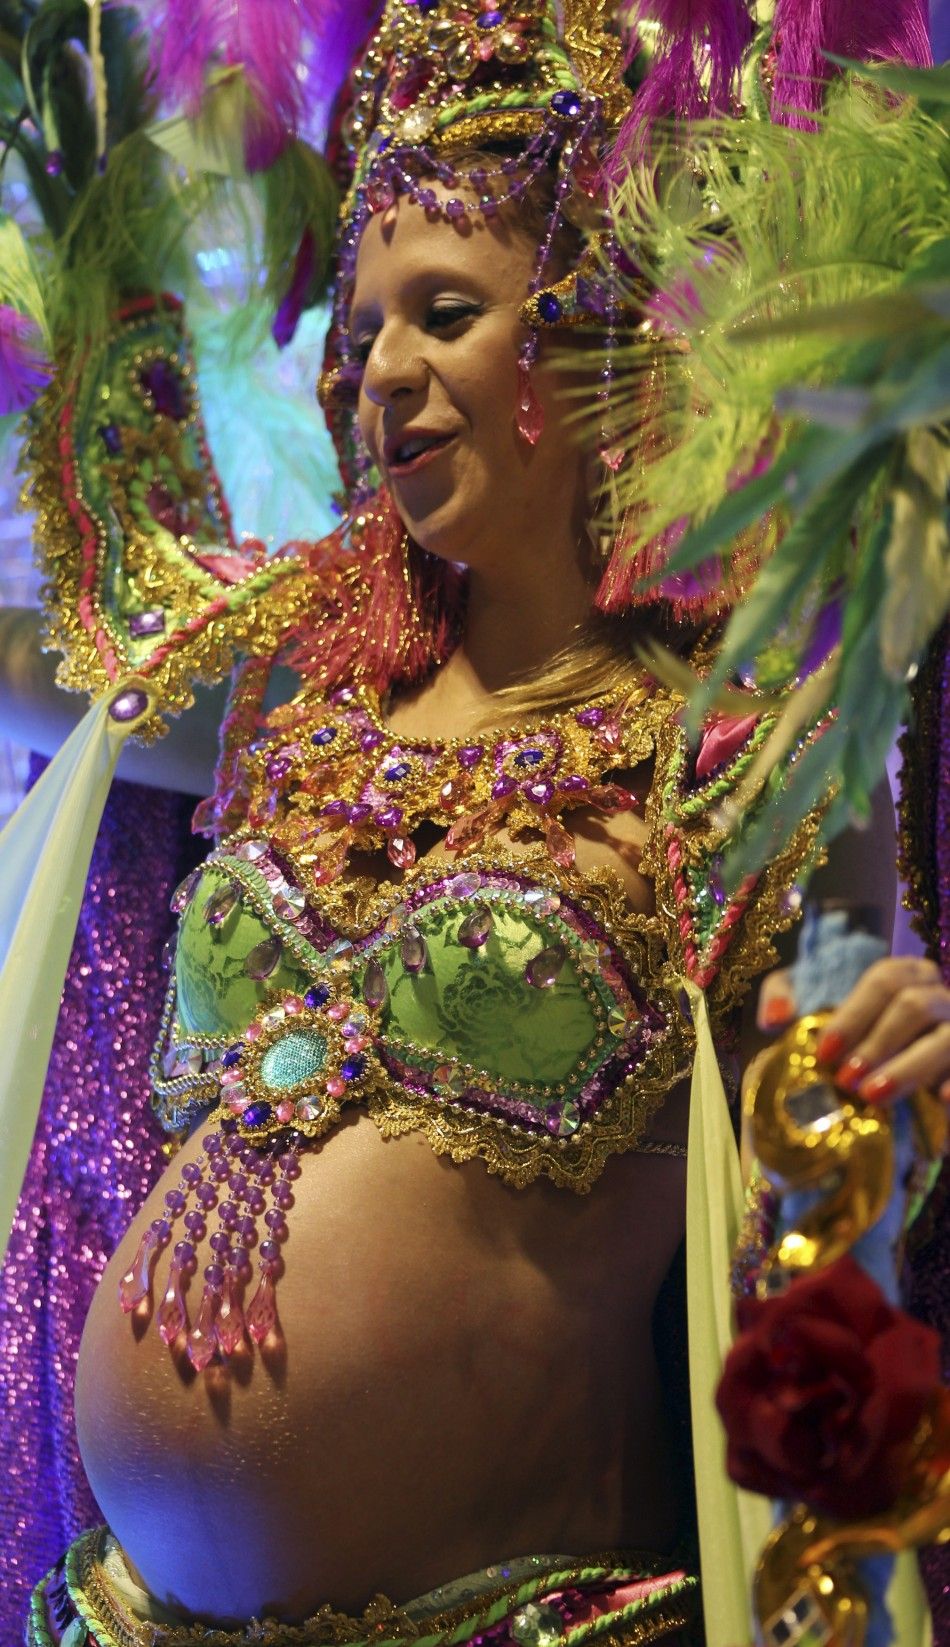 Brazil Carnival begins 